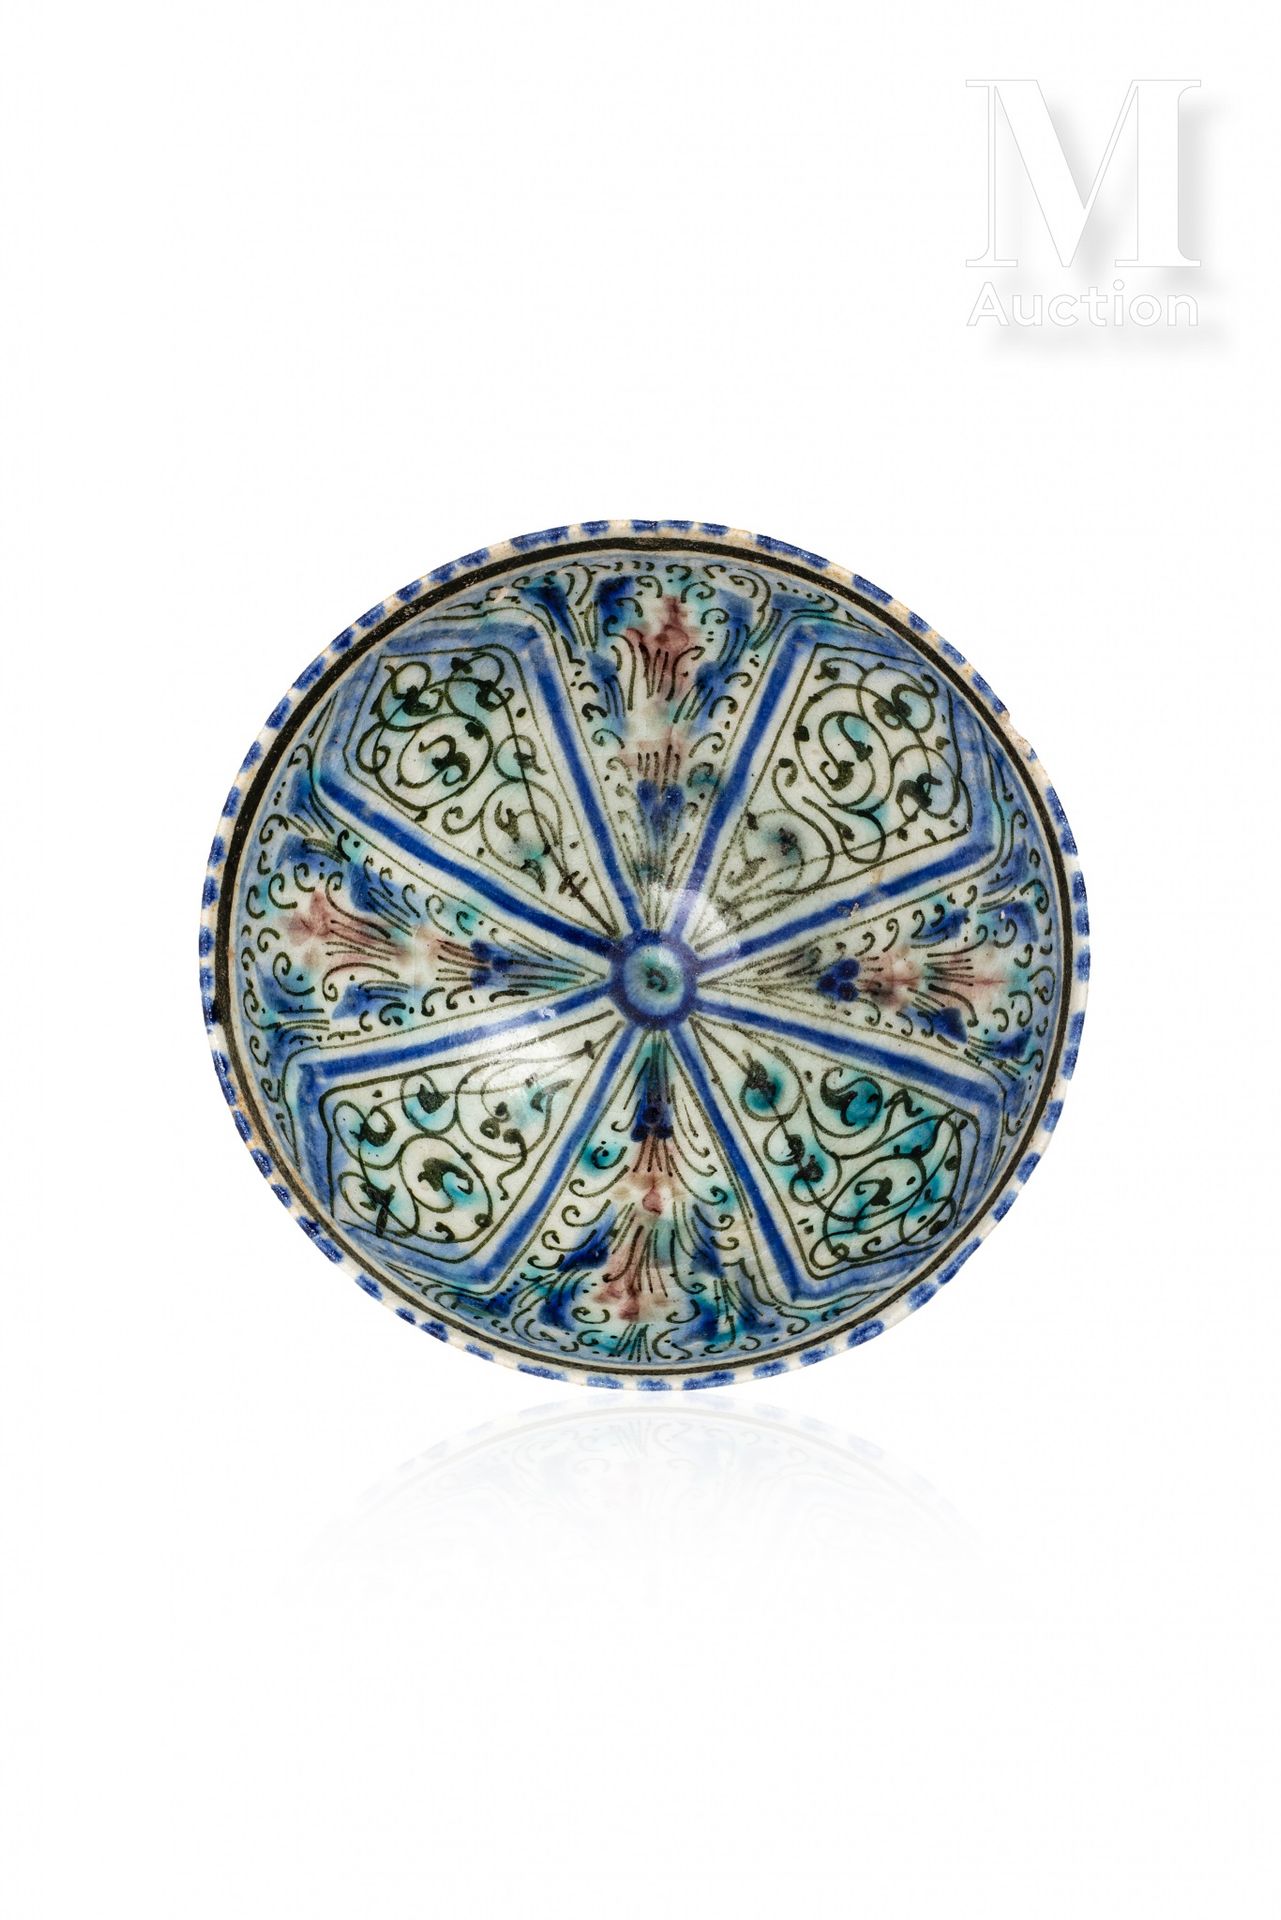 Coupe ilkhanide Iran, Sultanabad, 14. Jahrhundert

Schale auf Sockel aus Silikat&hellip;